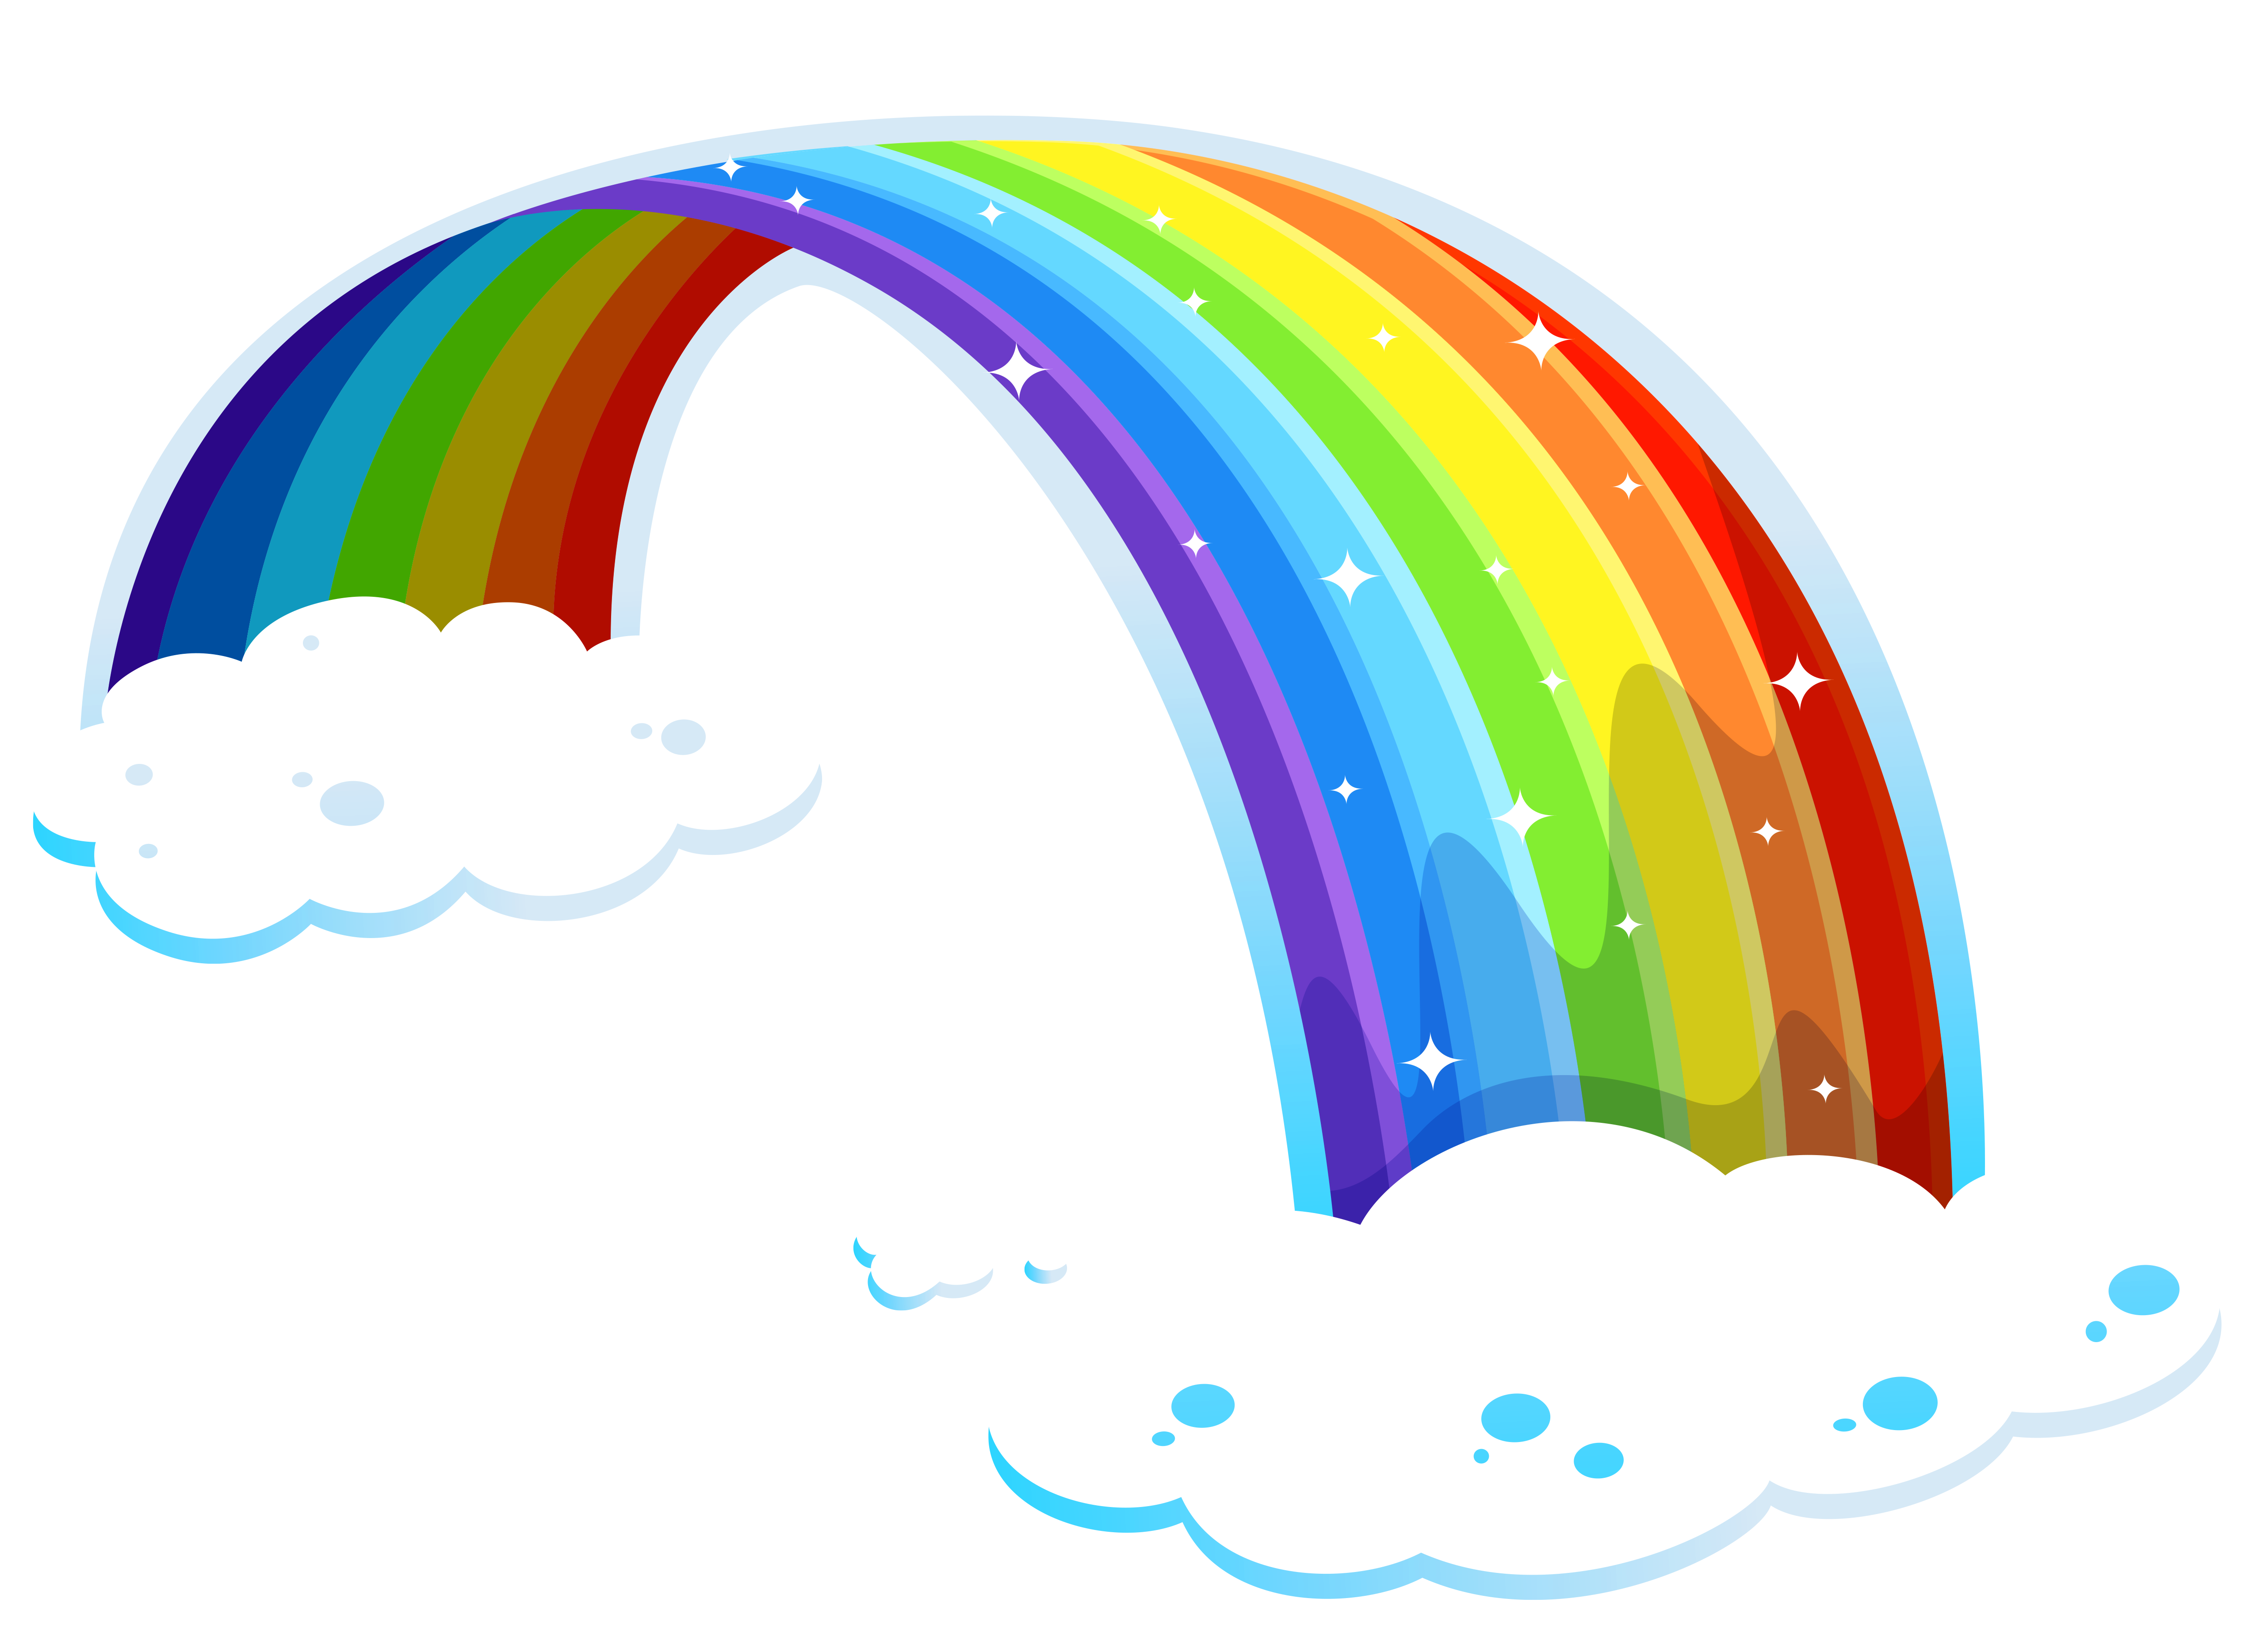 Sparkly rainbow clipart - ClipartFox